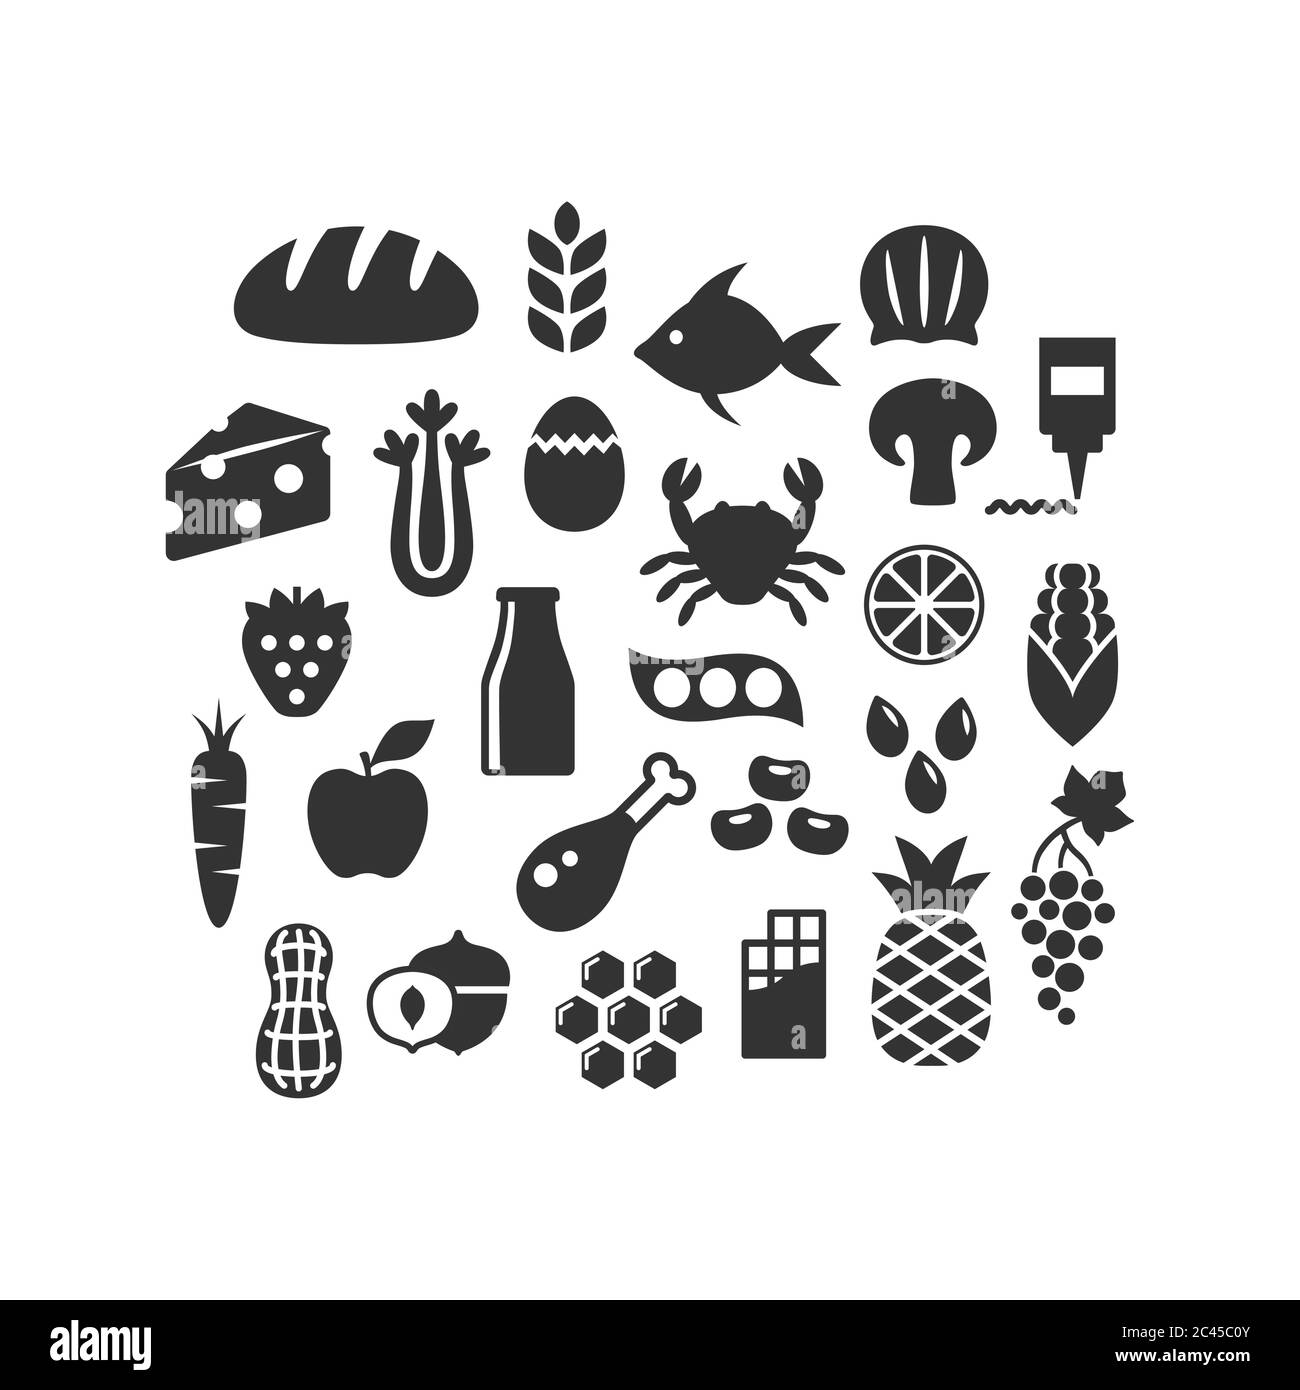 Prodotti alimentari, frutta, verdura e latticini nero isolato vettore icone set. Ingredienti alimentari, carne, pesce, simboli di silhouette glifo noci. Illustrazione Vettoriale